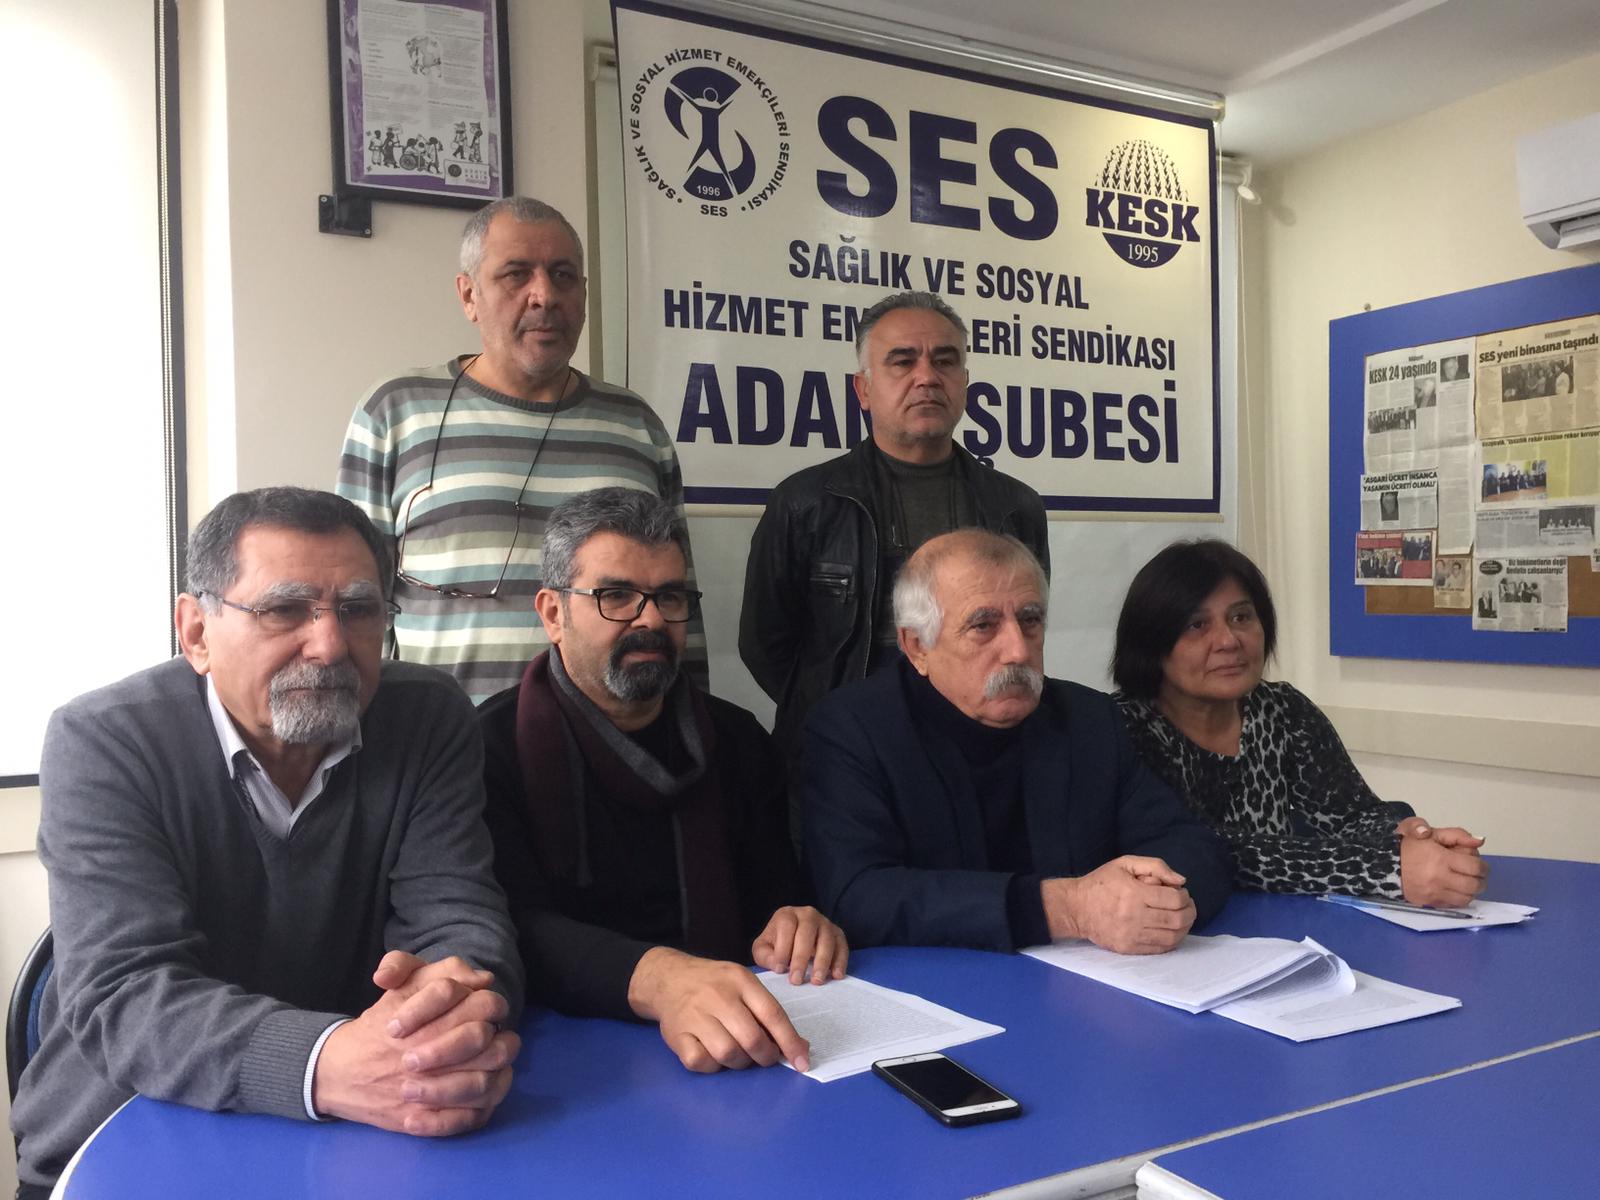 Adana Şubemiz: Sorunlarımızı Mücadele ve Dayanışma İle Çözeceğiz